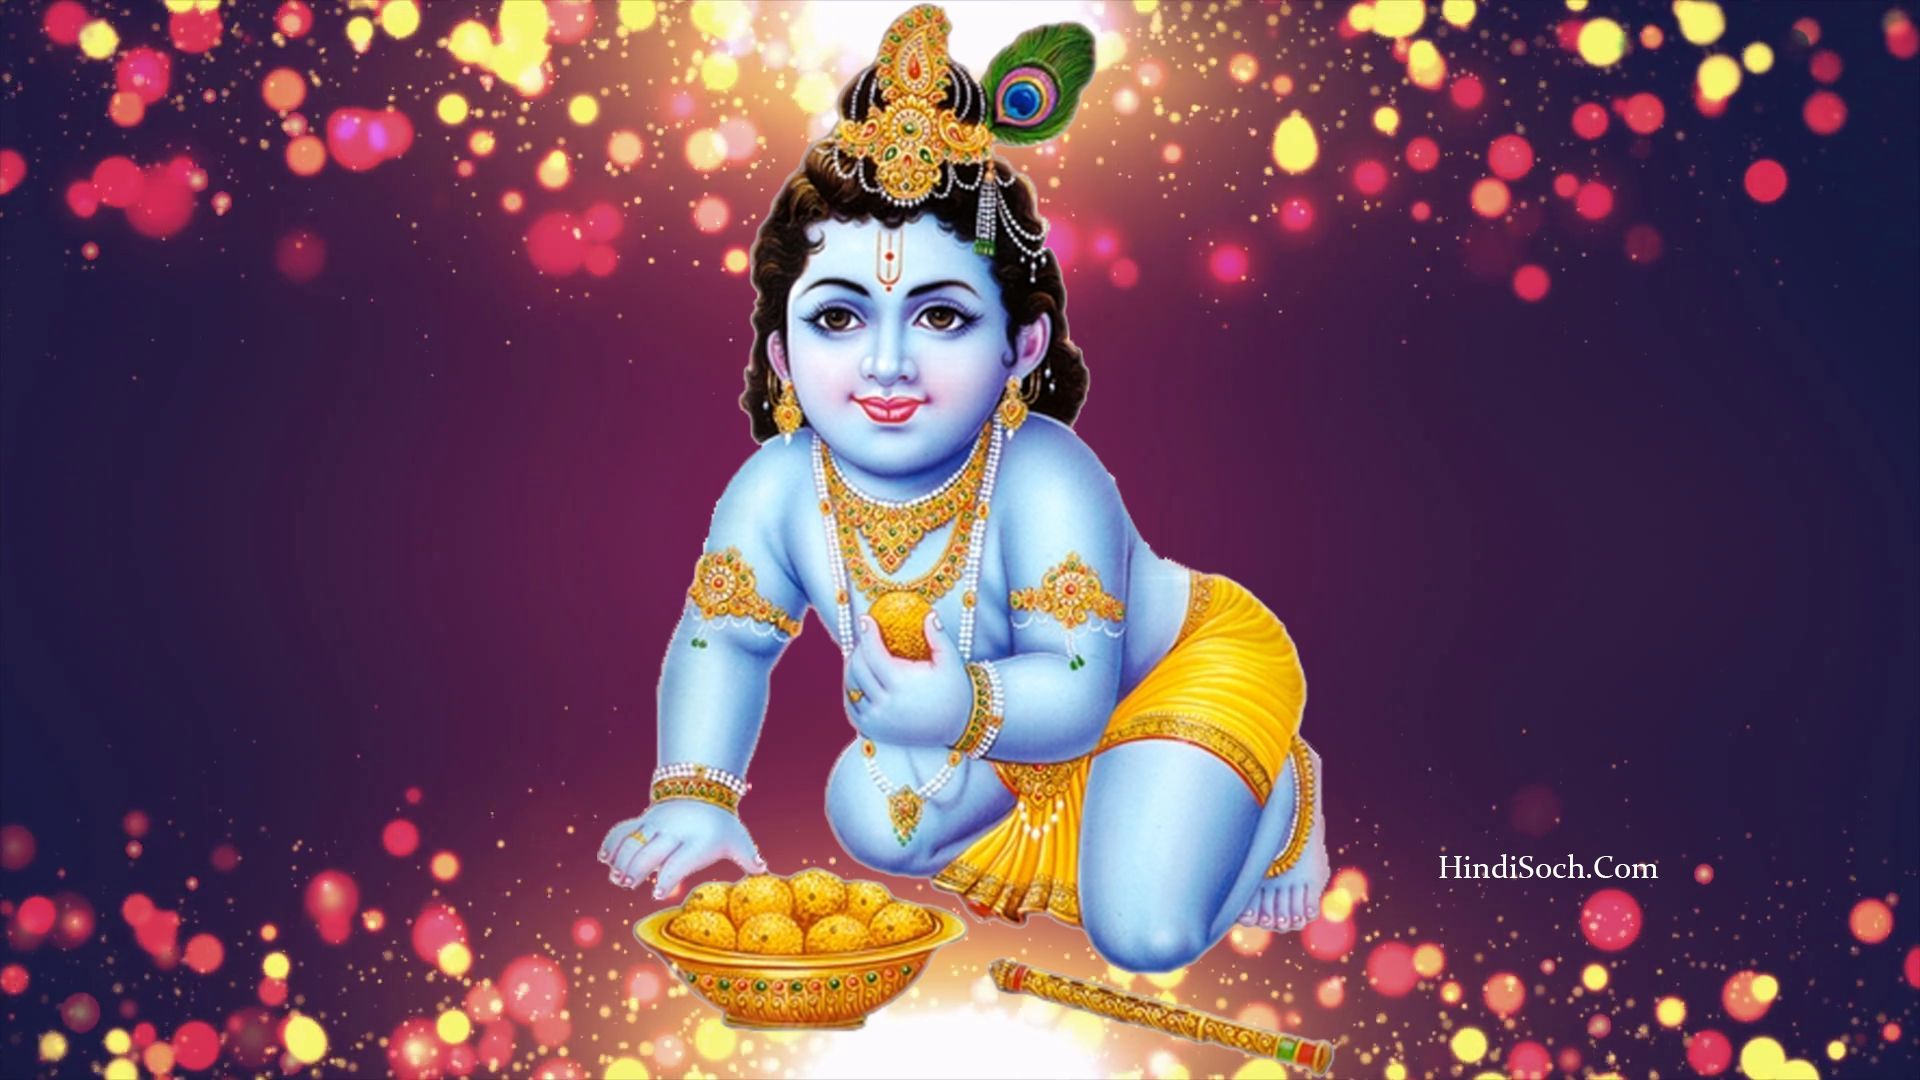 Bhagwan Lord Krishna Image. Shri God Krishna Image 2020